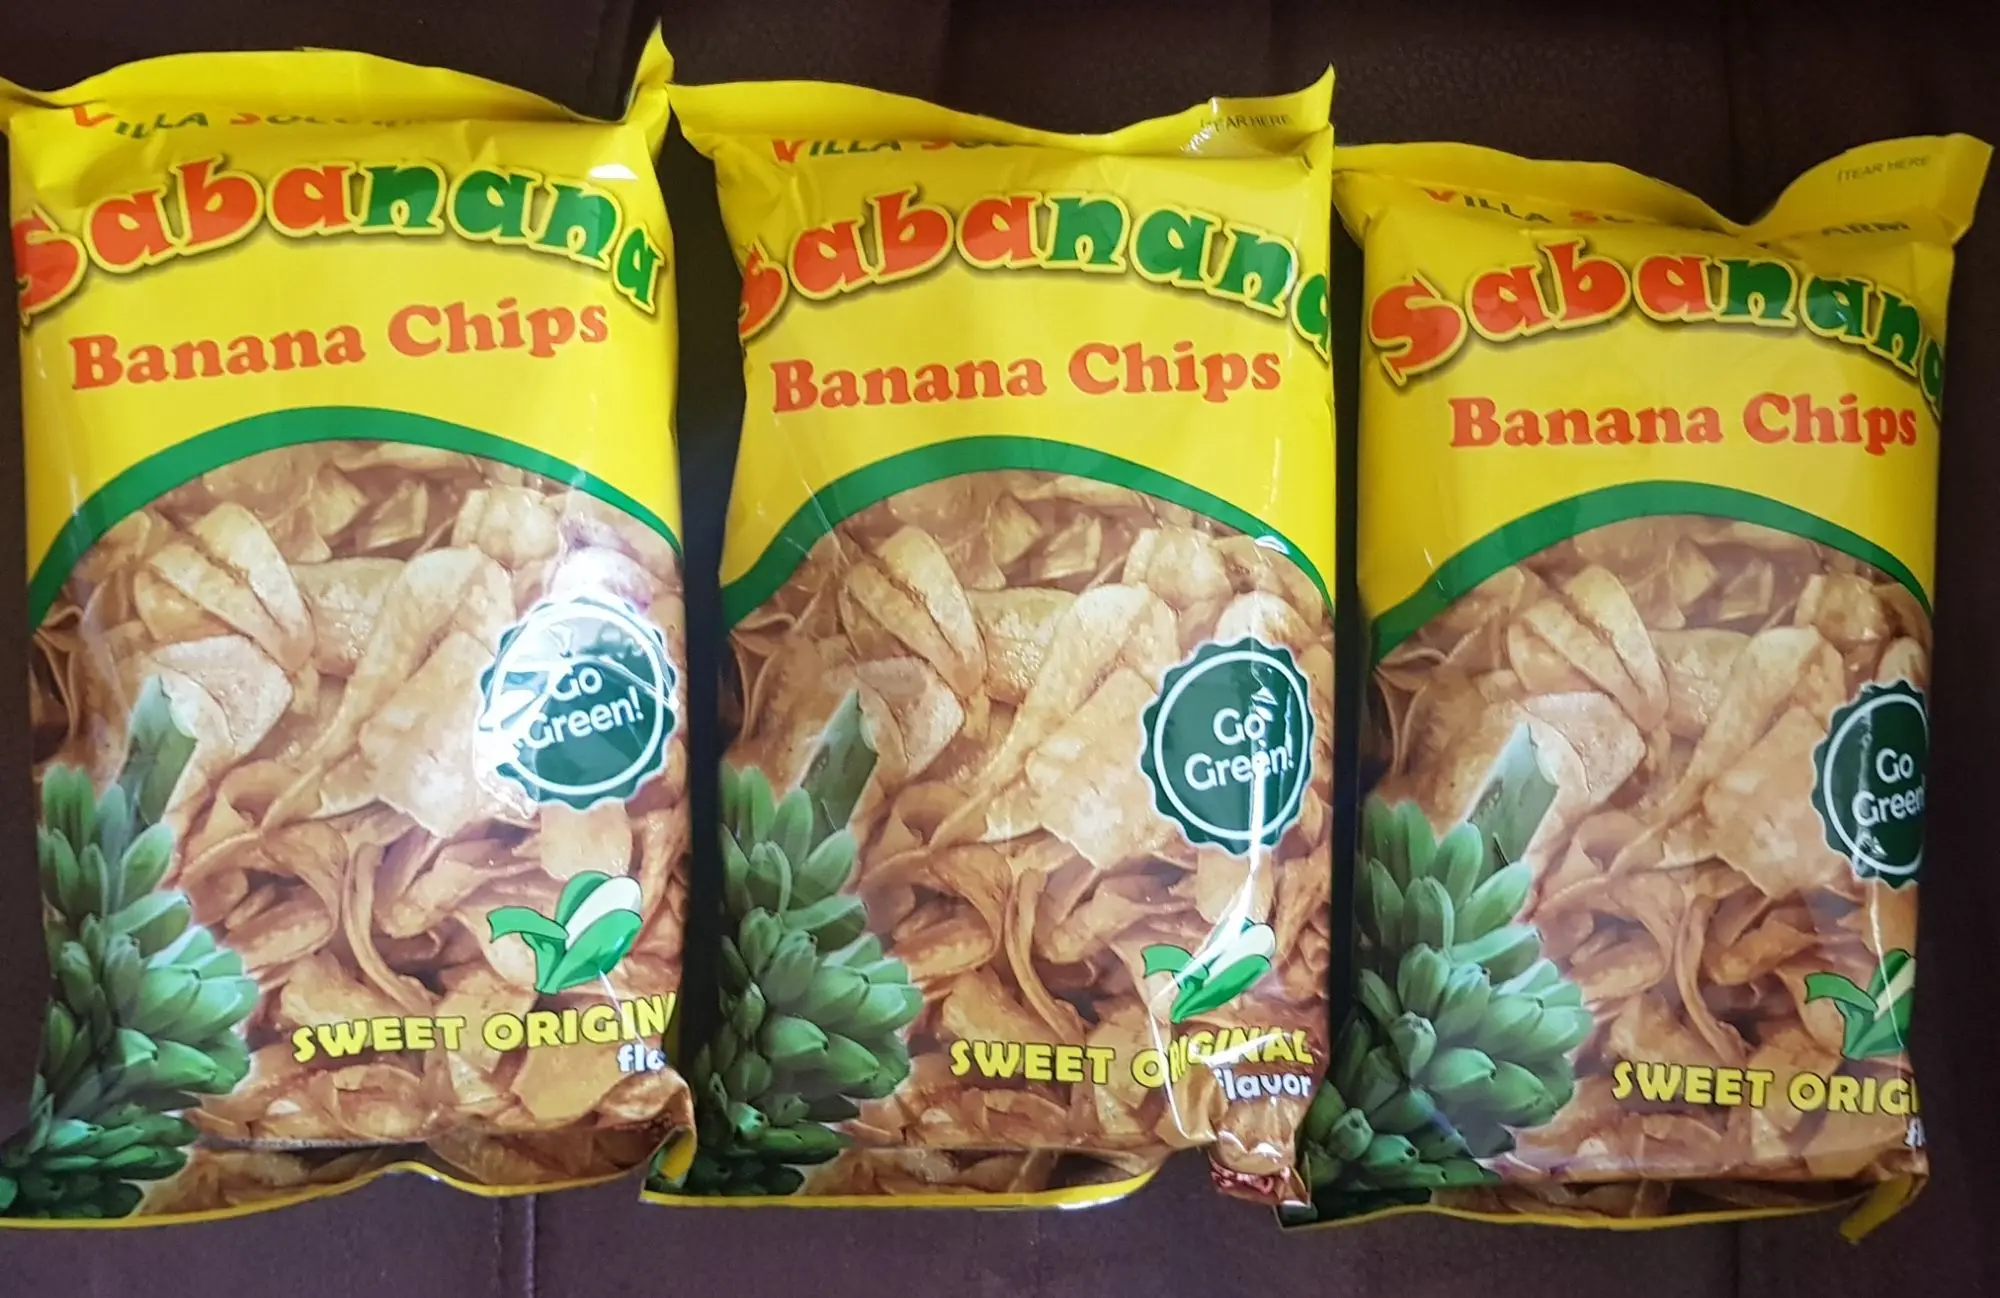 Mialendra's Sabanana Chips/Banana Chips/Banana Snacks/Snacks